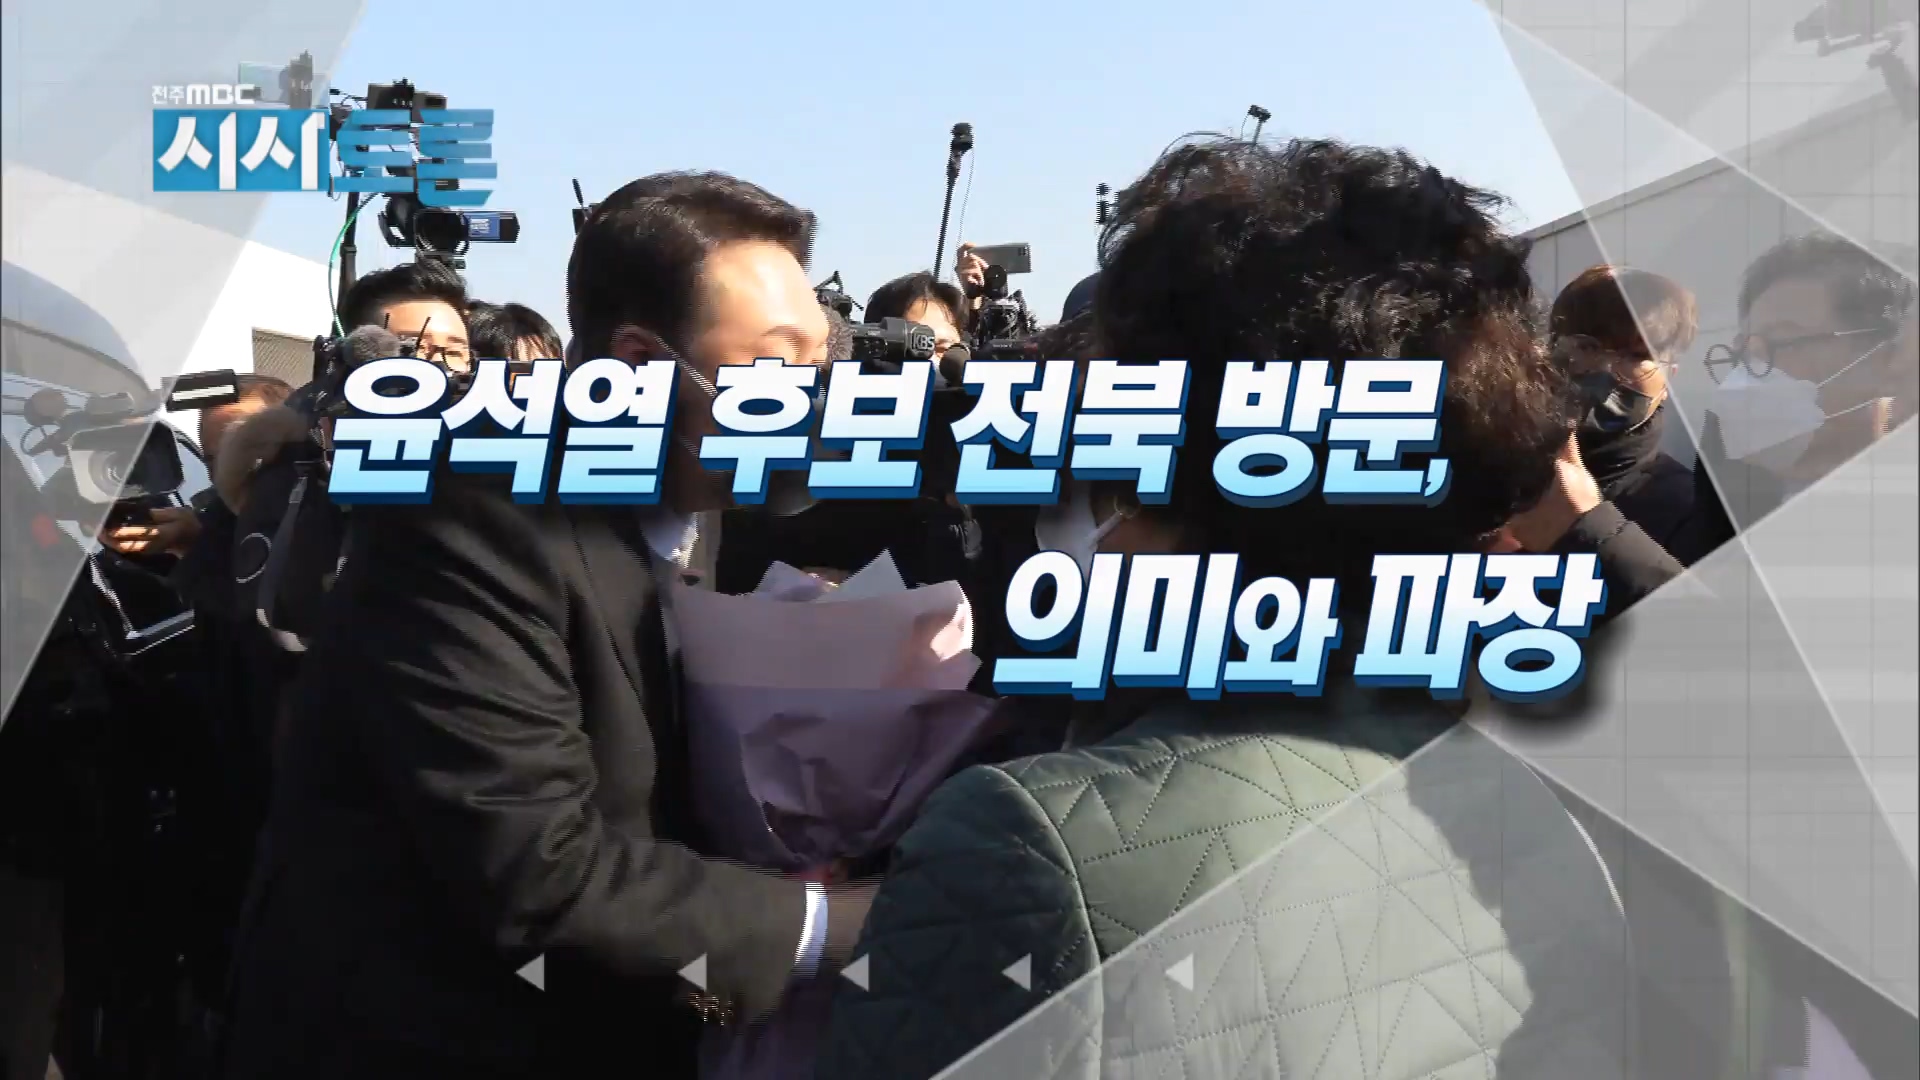 윤석열 후보 전북 방문, 의미와 파장